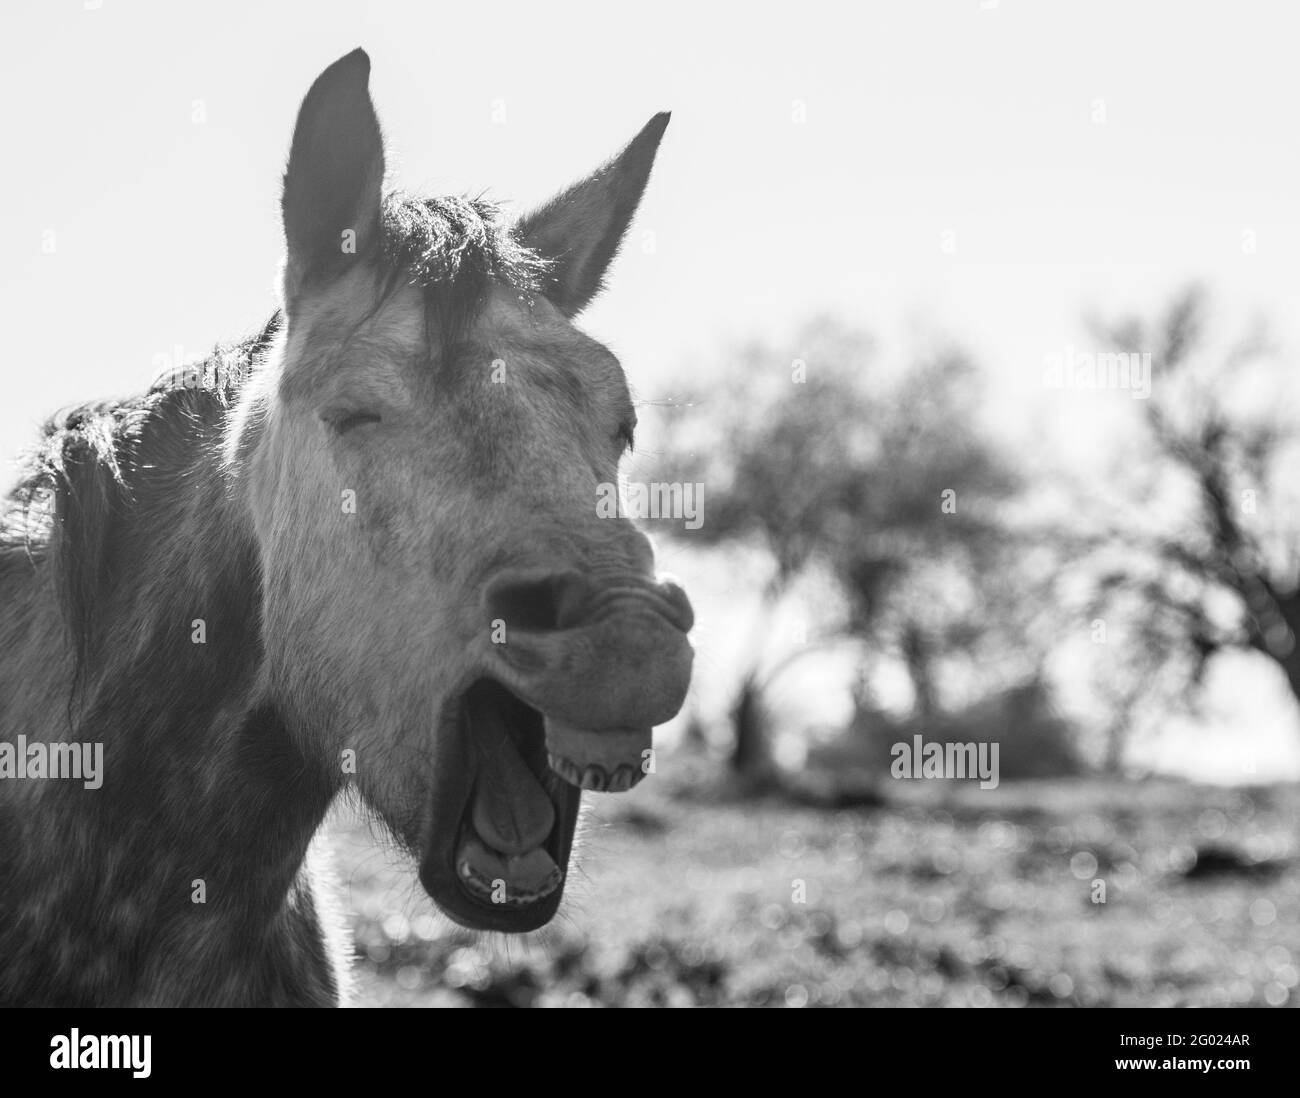 Schwarz-weißes Bild eines Pferdes öffnet seinen Mund, sieht aus wie sein Lachen. Stockfoto